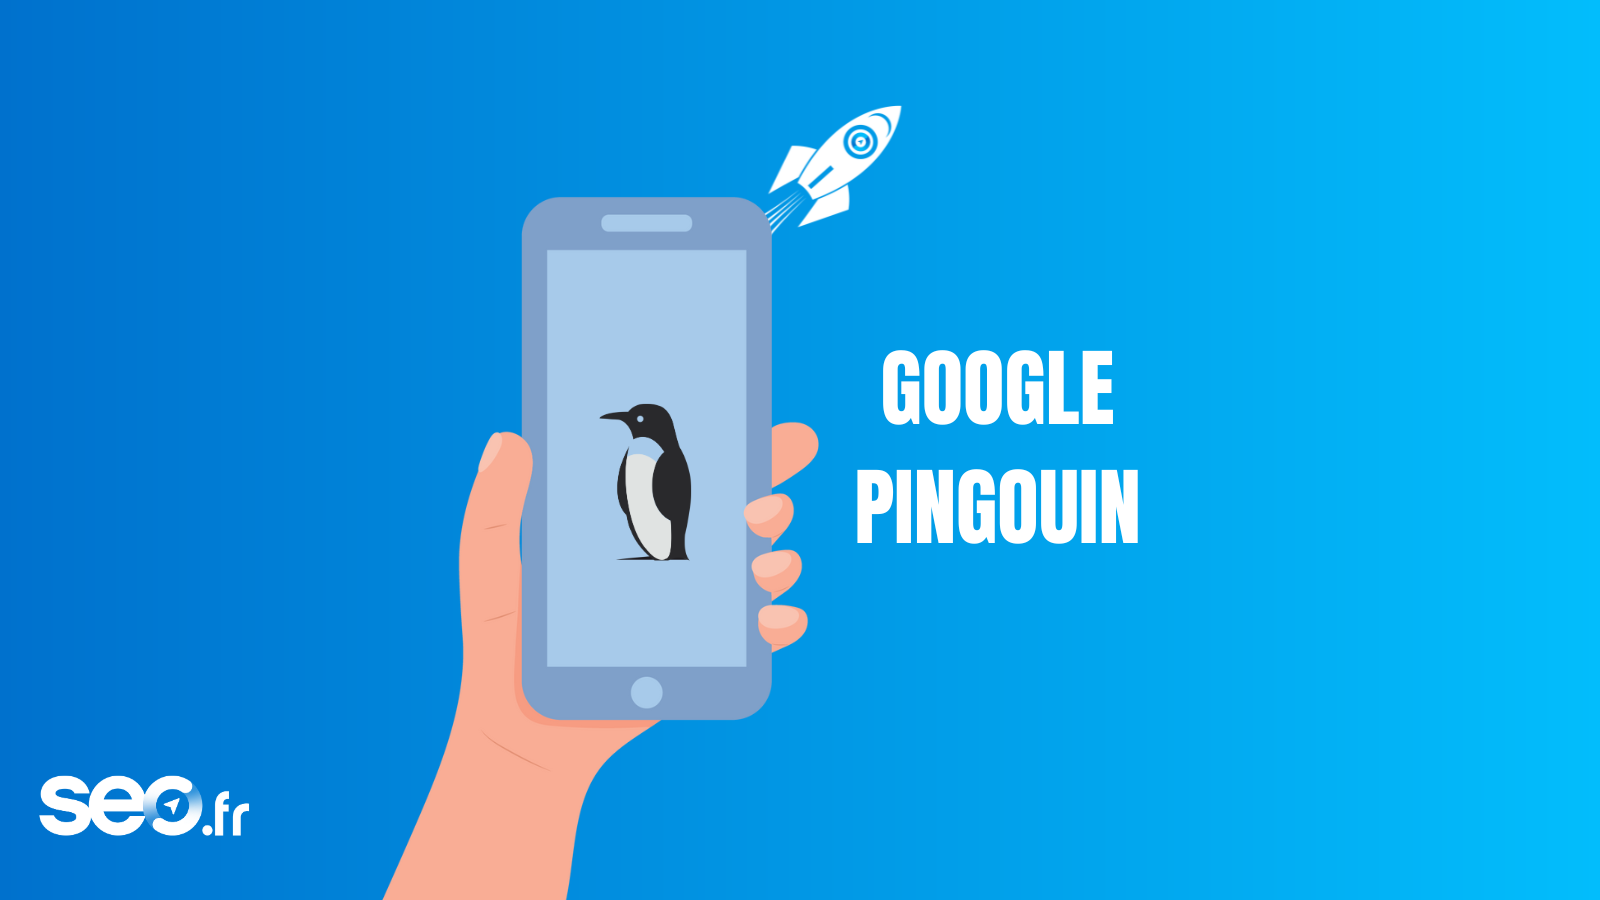 Ce que Google ne vous a pas dit sur Penguin version 4.0